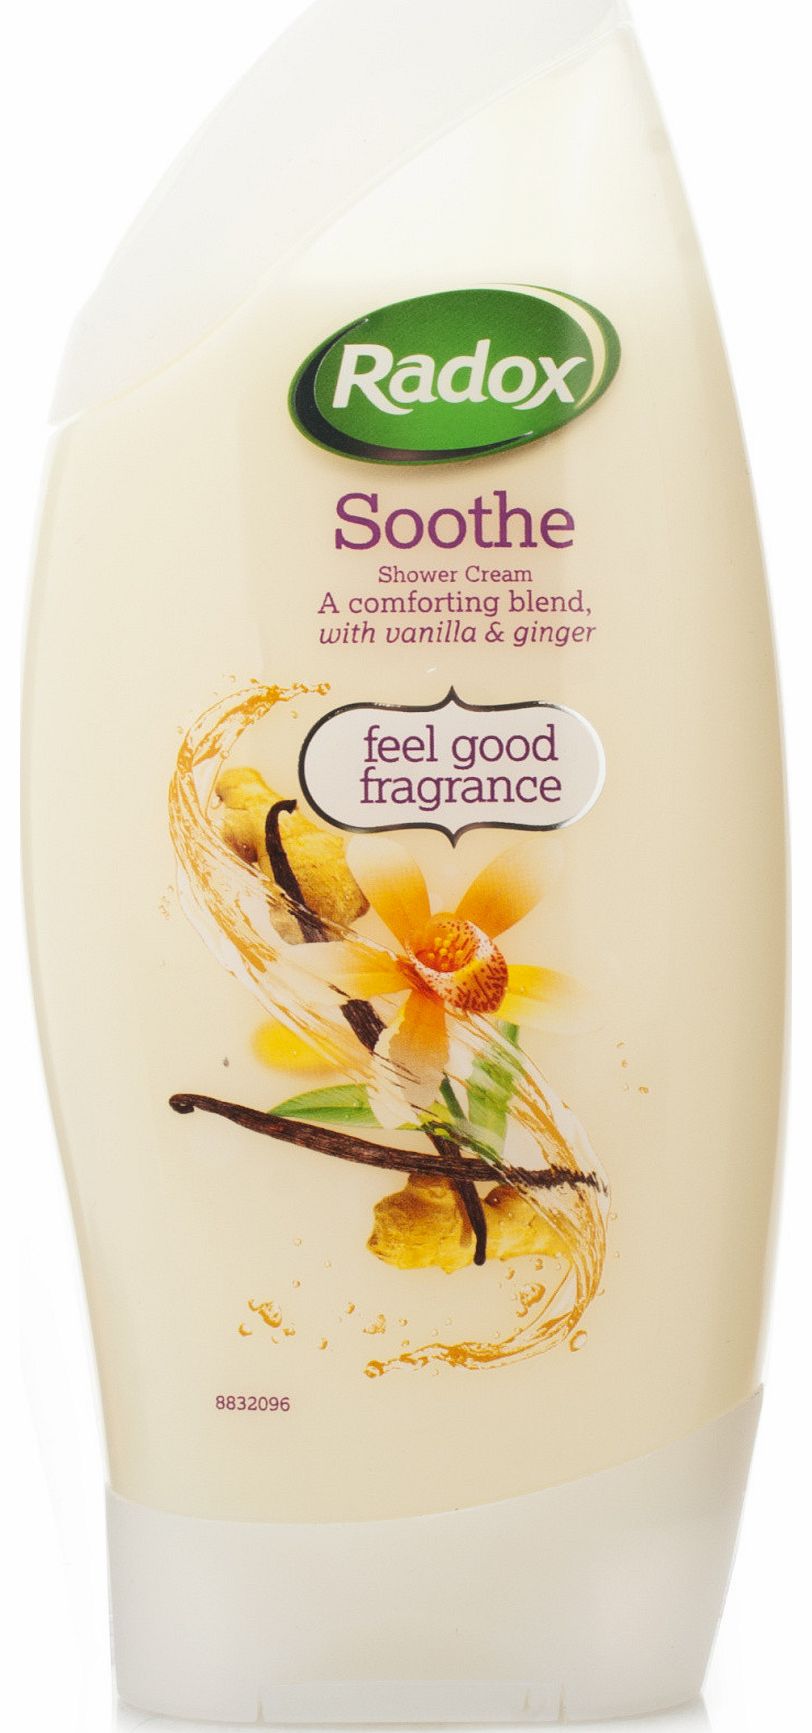 Radox Soothe Shower Cream